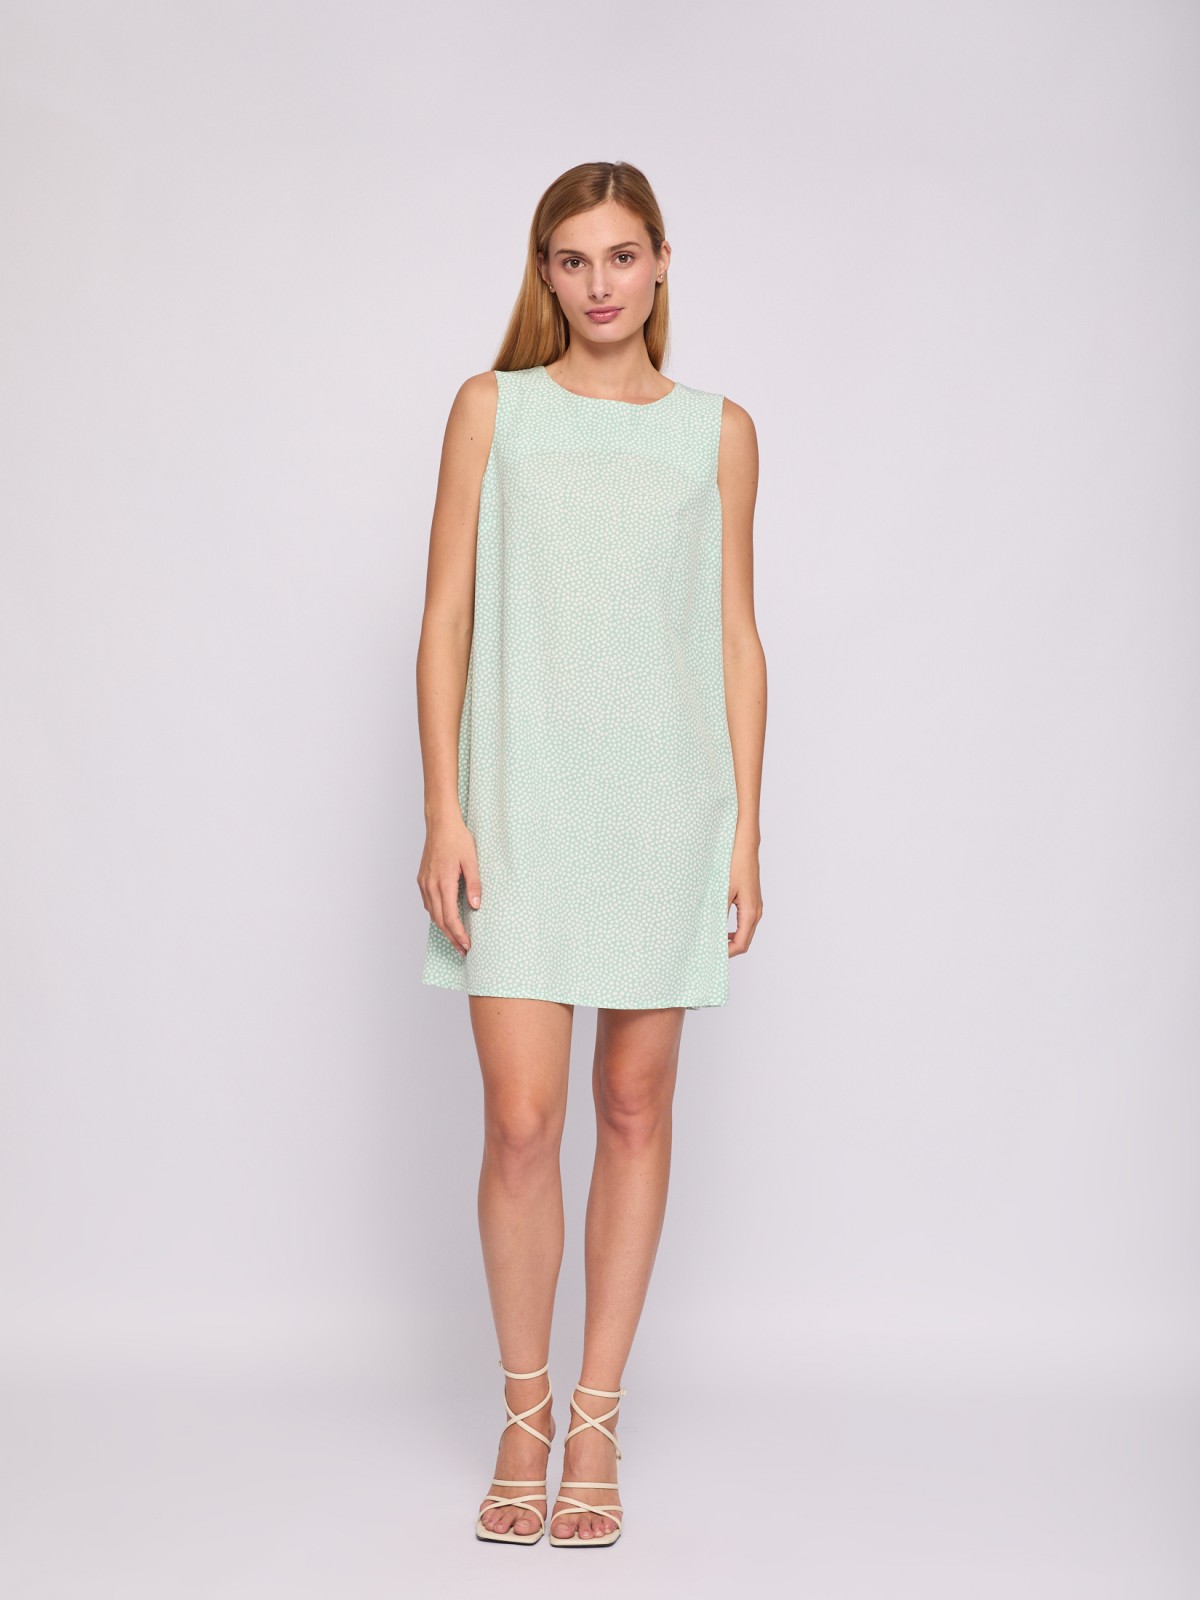 Платье мини без рукавов с вырезом на спине zolla 024238262232, цвет светло-зеленый, размер XS - фото 1